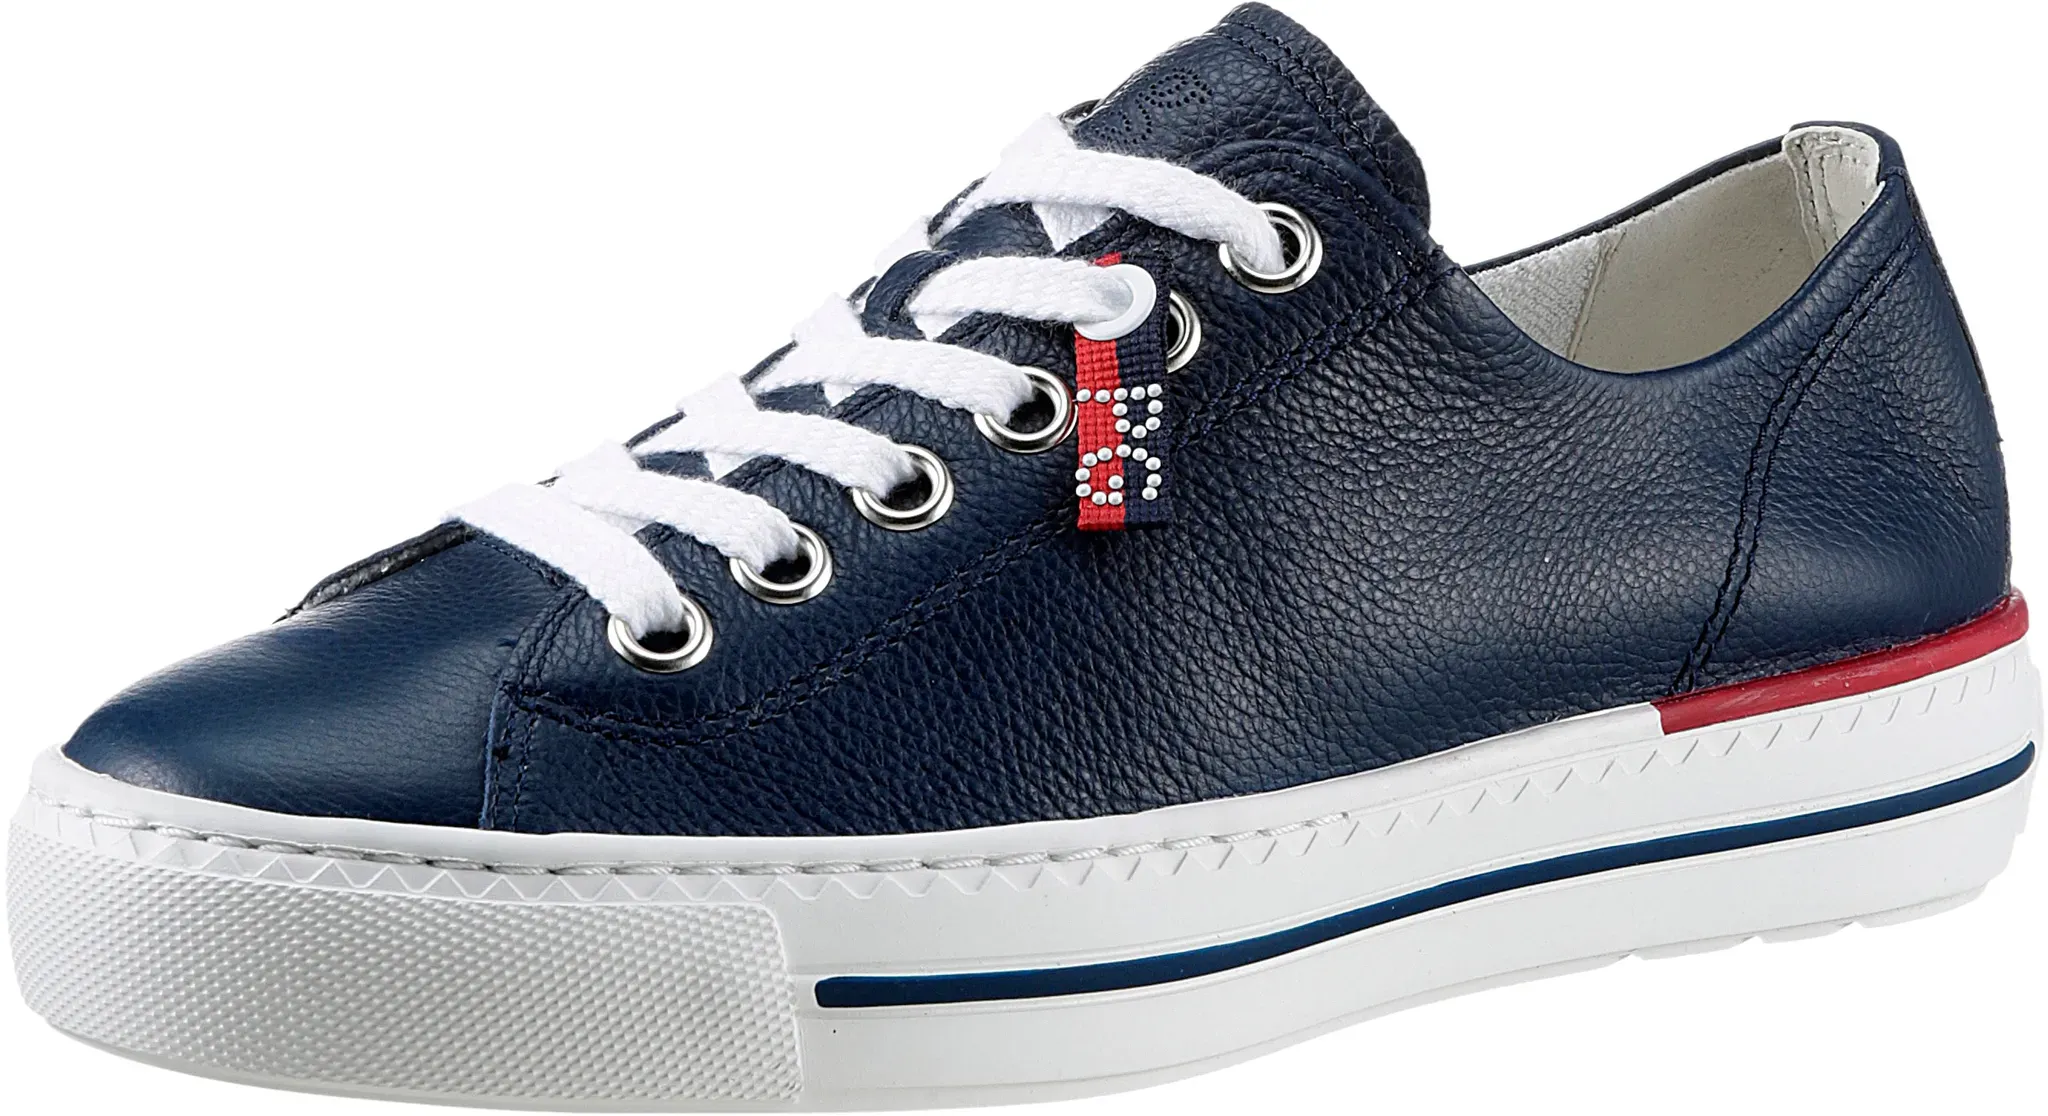 Sneaker PAUL GREEN "Super Soft Pauls" Gr. 40, blau (dunkelblau) Damen Schuhe Sneaker in hochwertiger Verarbeitung, Freizeitschuh, Halbschuh, Schnürschuh